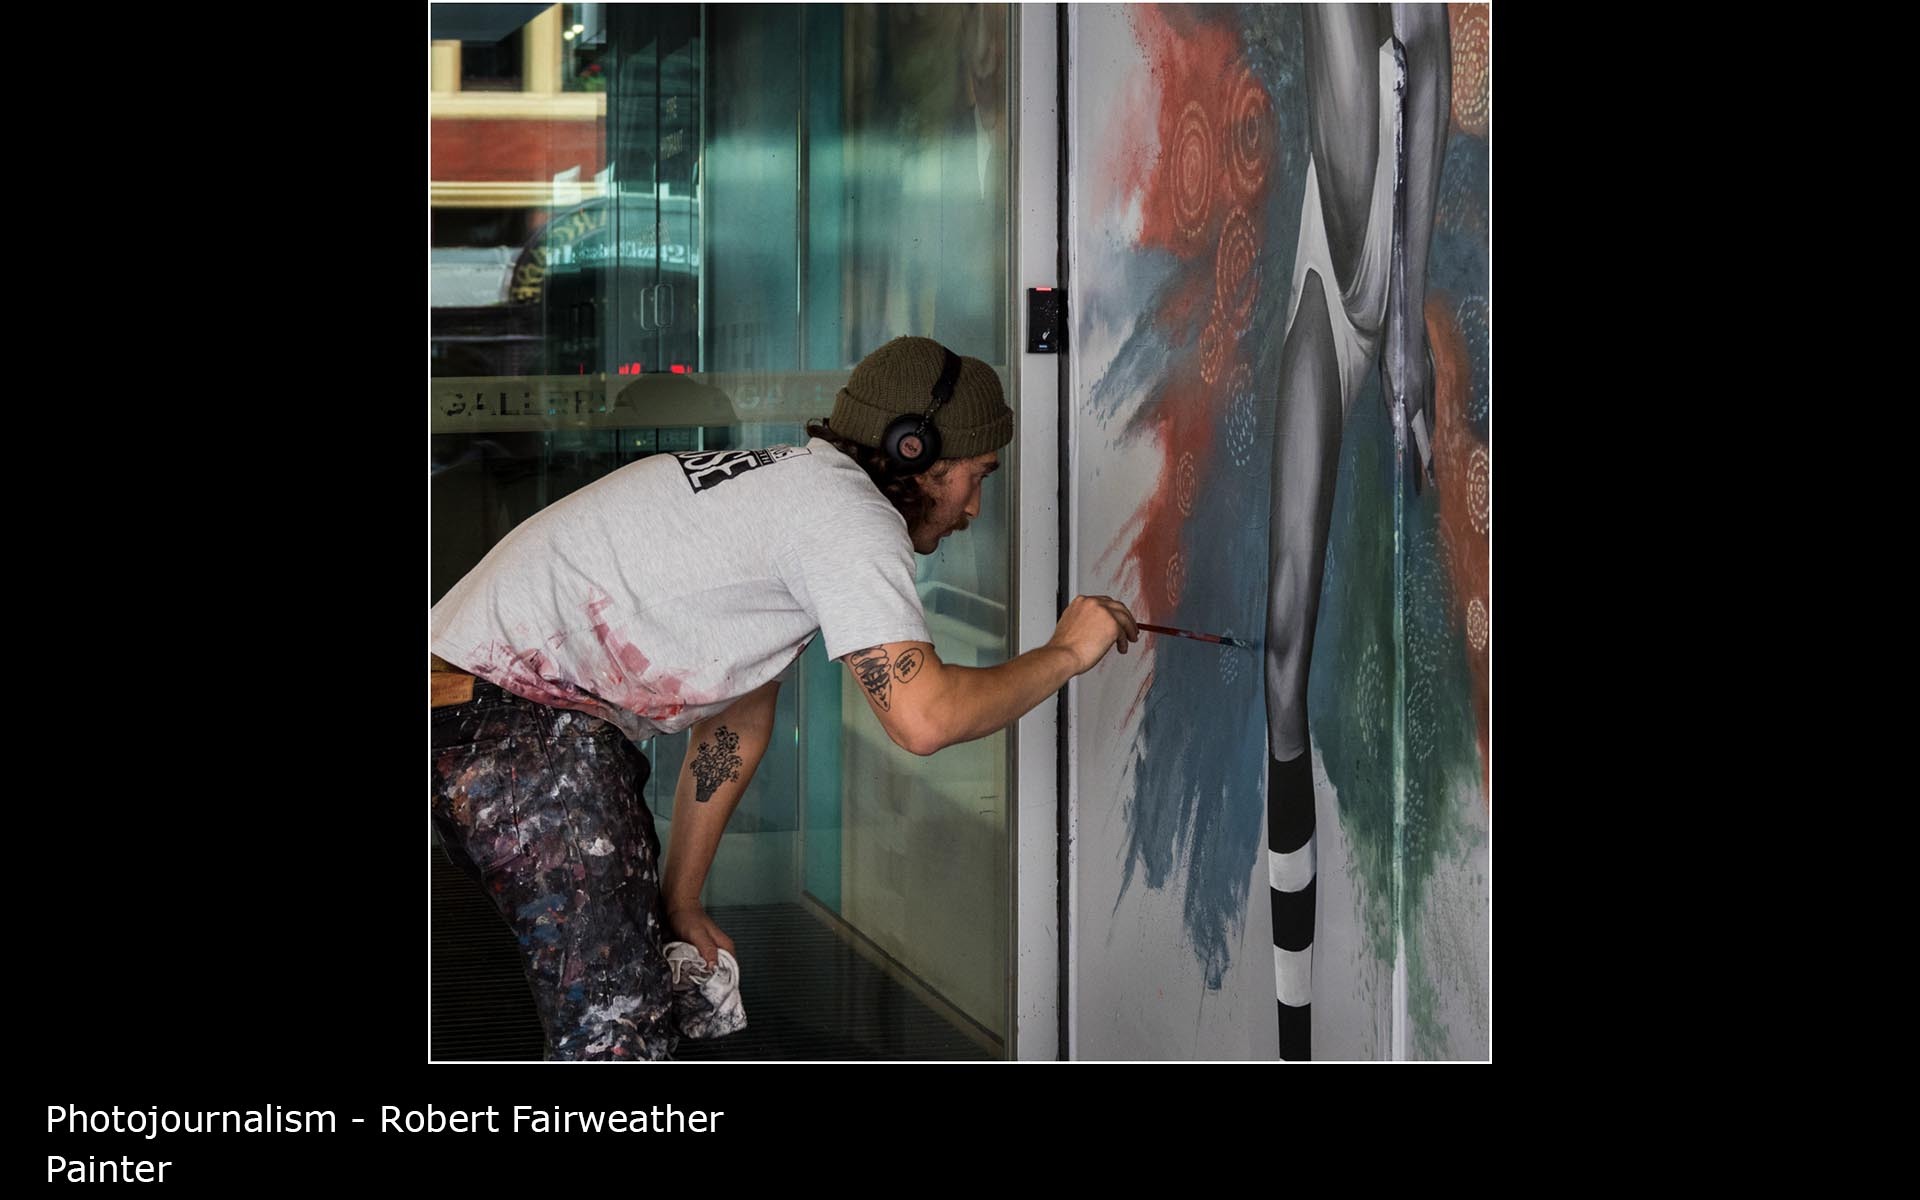 Painter - Robert Fairweather